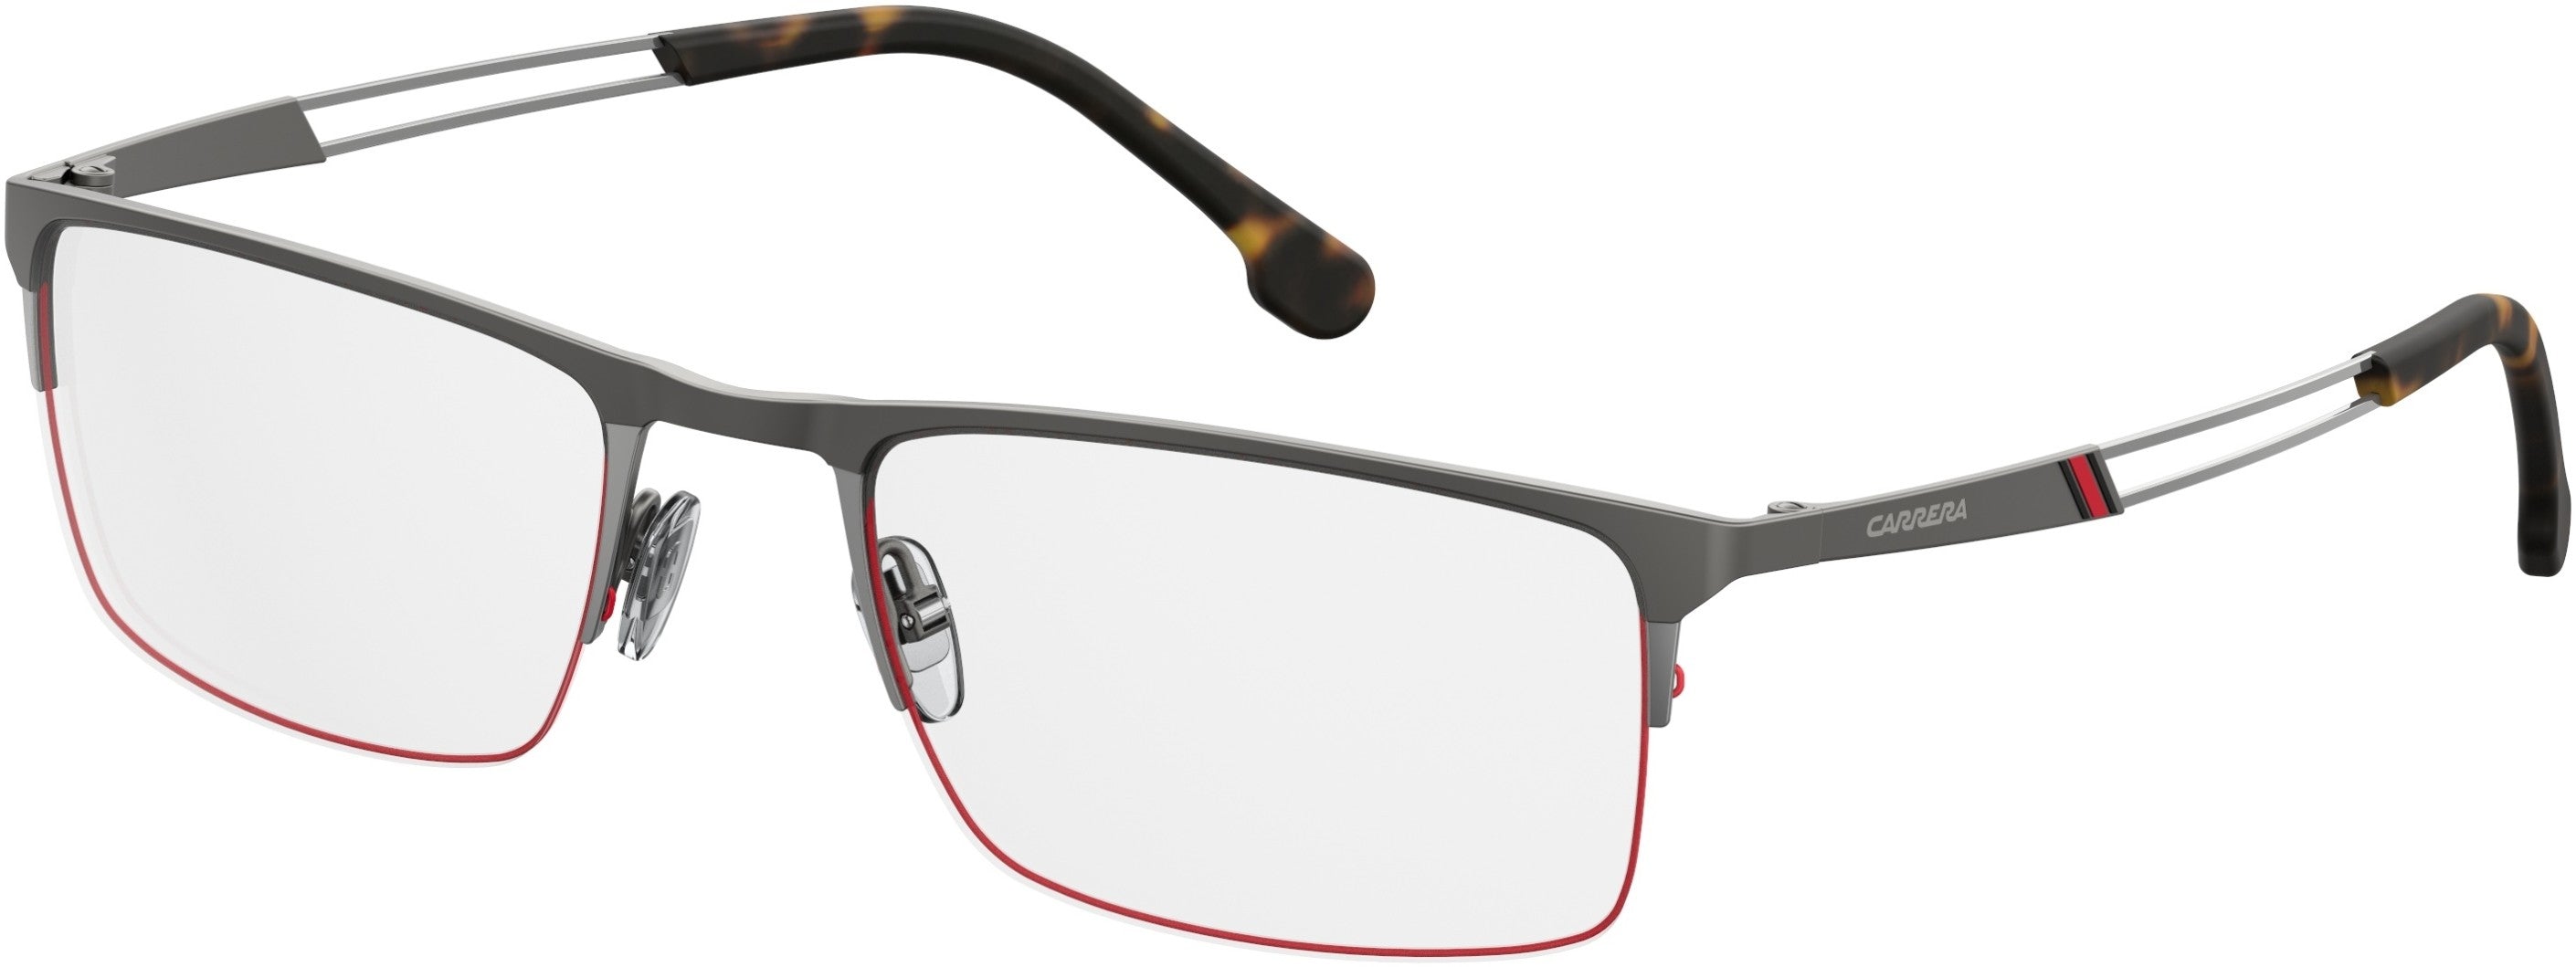  Carrera 8832 Rectangular Eyeglasses 0R80-0R80  Semi Matte Dark Ruthenium (00 Demo Lens)